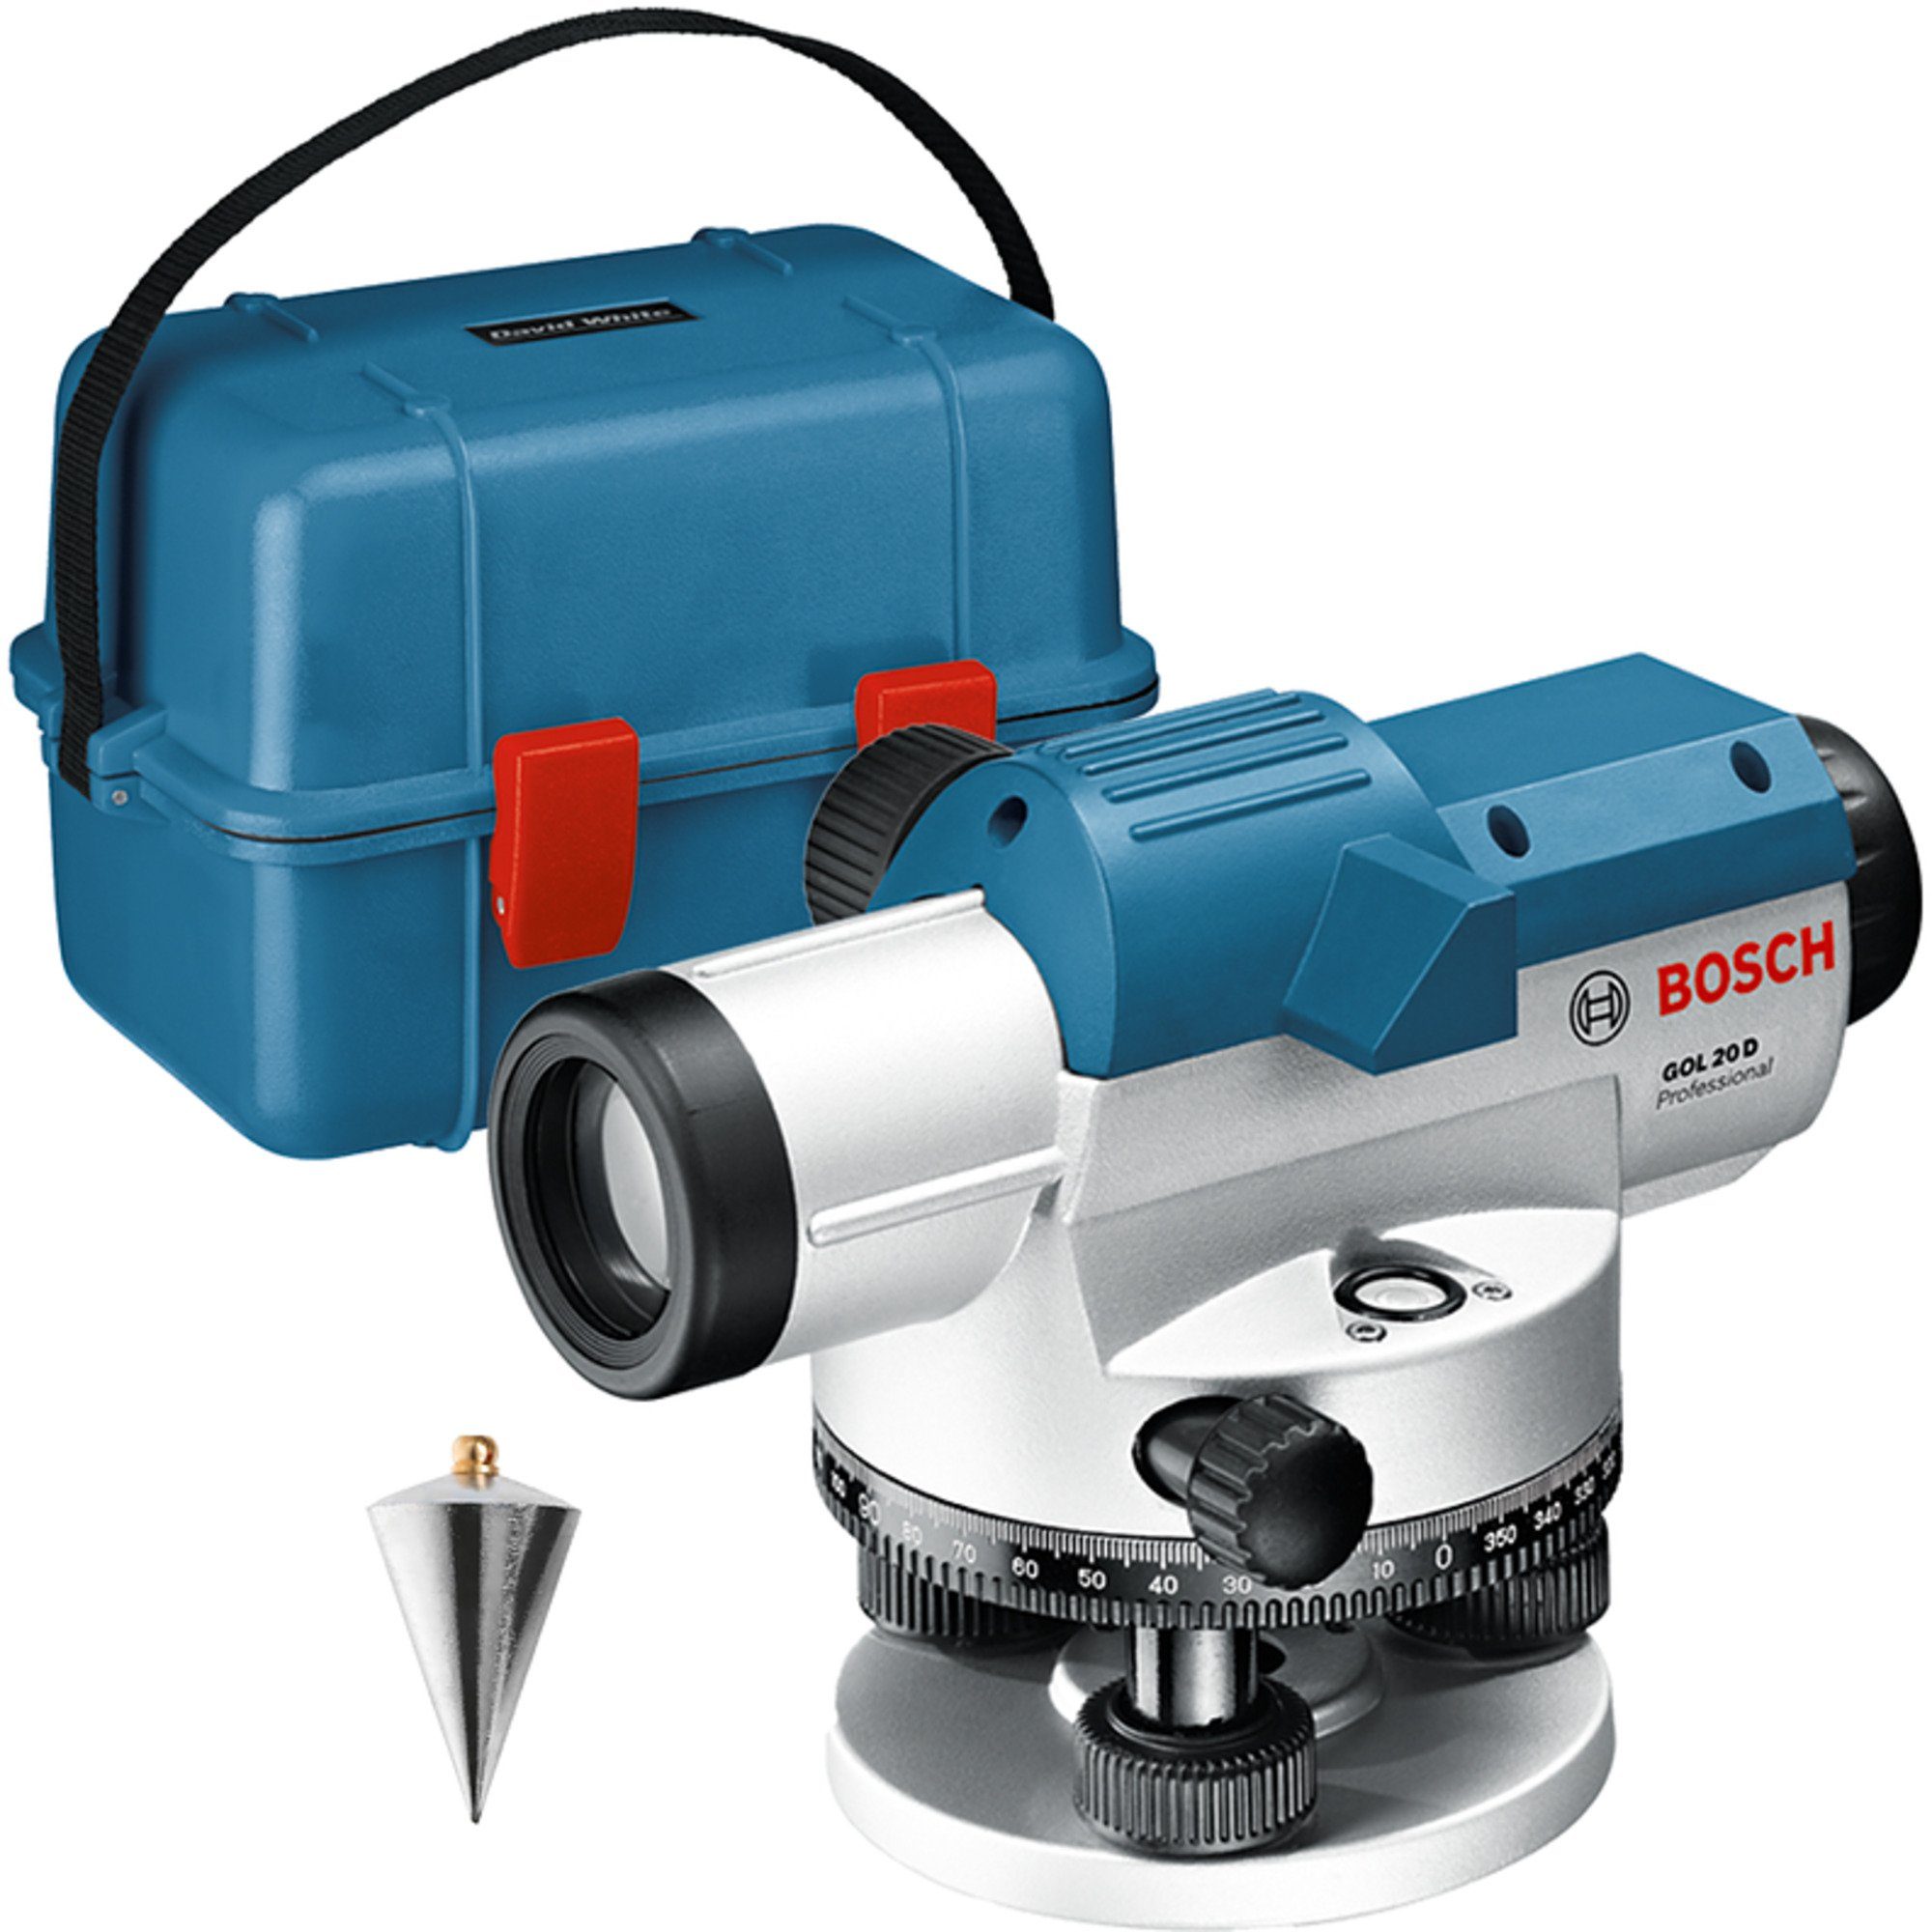 BOSCH Akku-Multifunktionswerkzeug Bosch Professional Optisches Nivelliergerät GOL 20